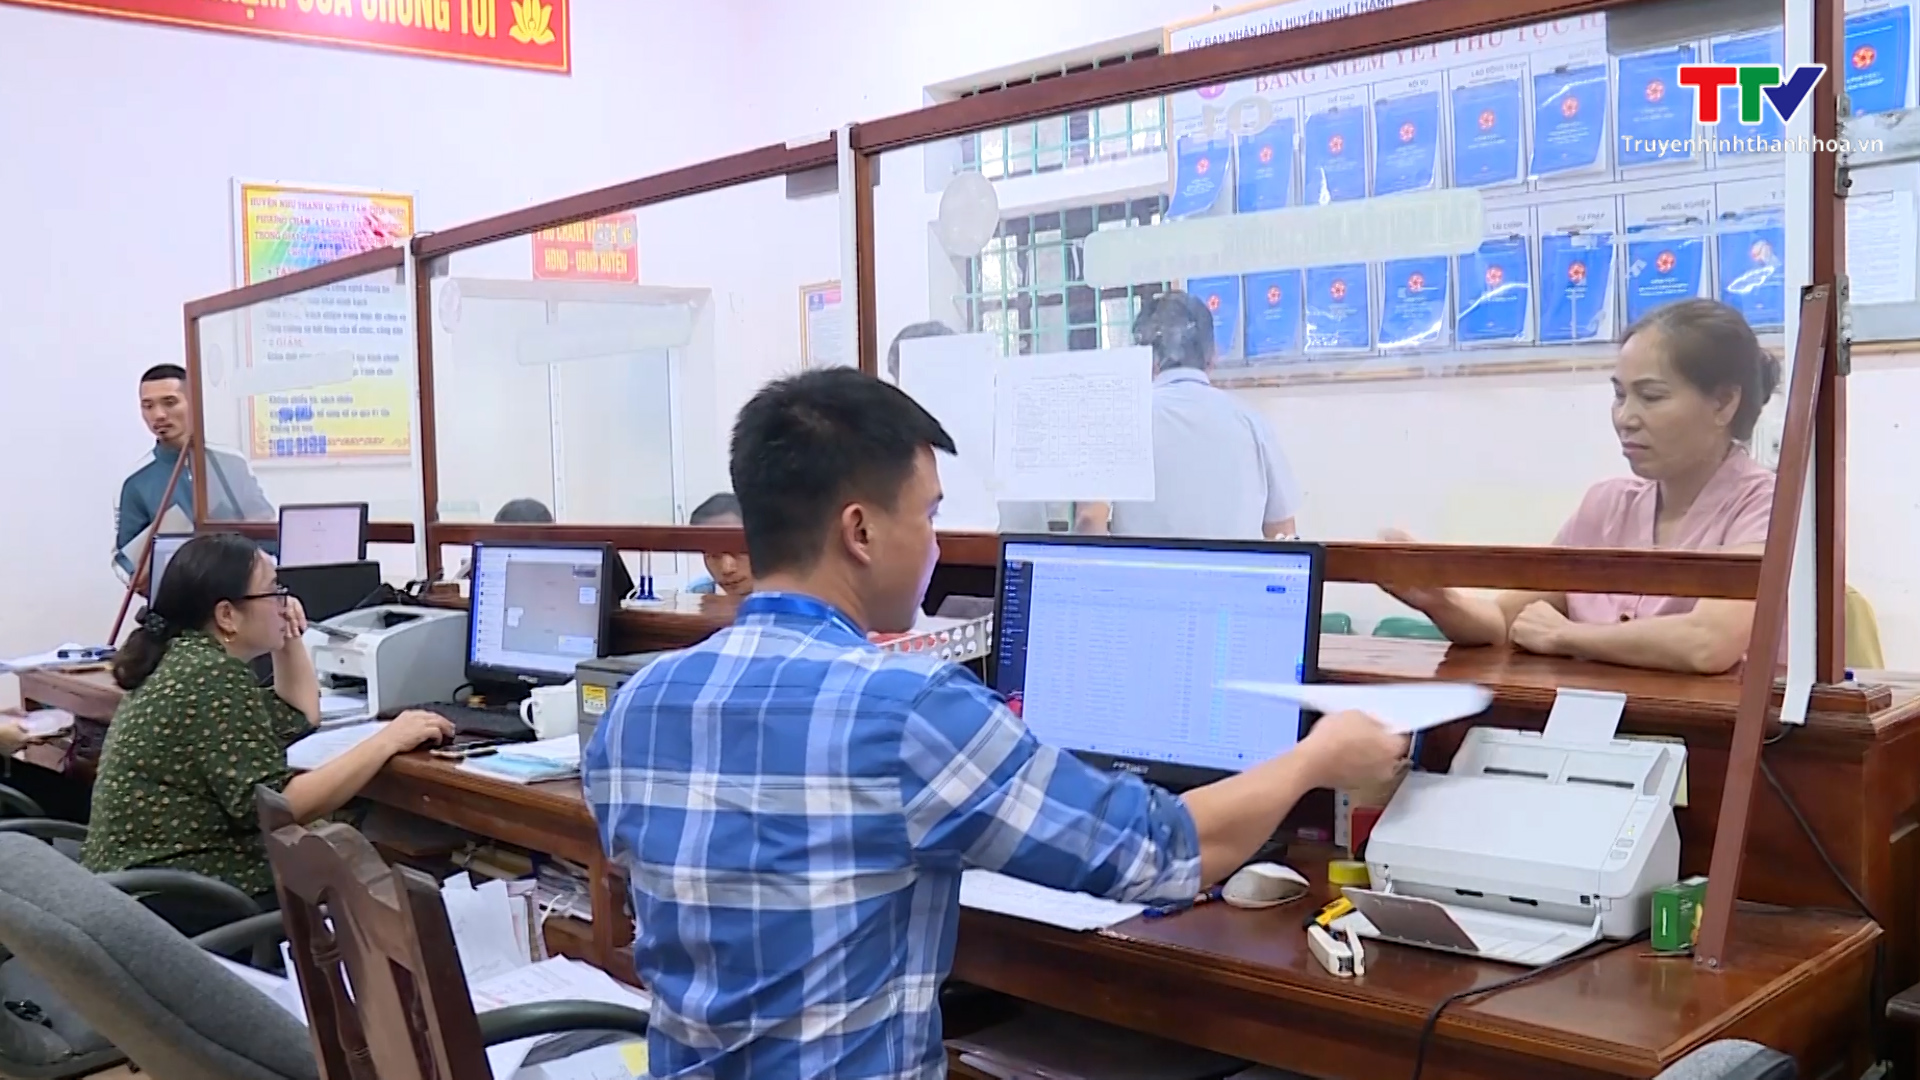 Chuyển đổi số để nâng cao năng lực phục vụ người dân, doanh nghiệp ở huyện Như Thanh - Ảnh 4.